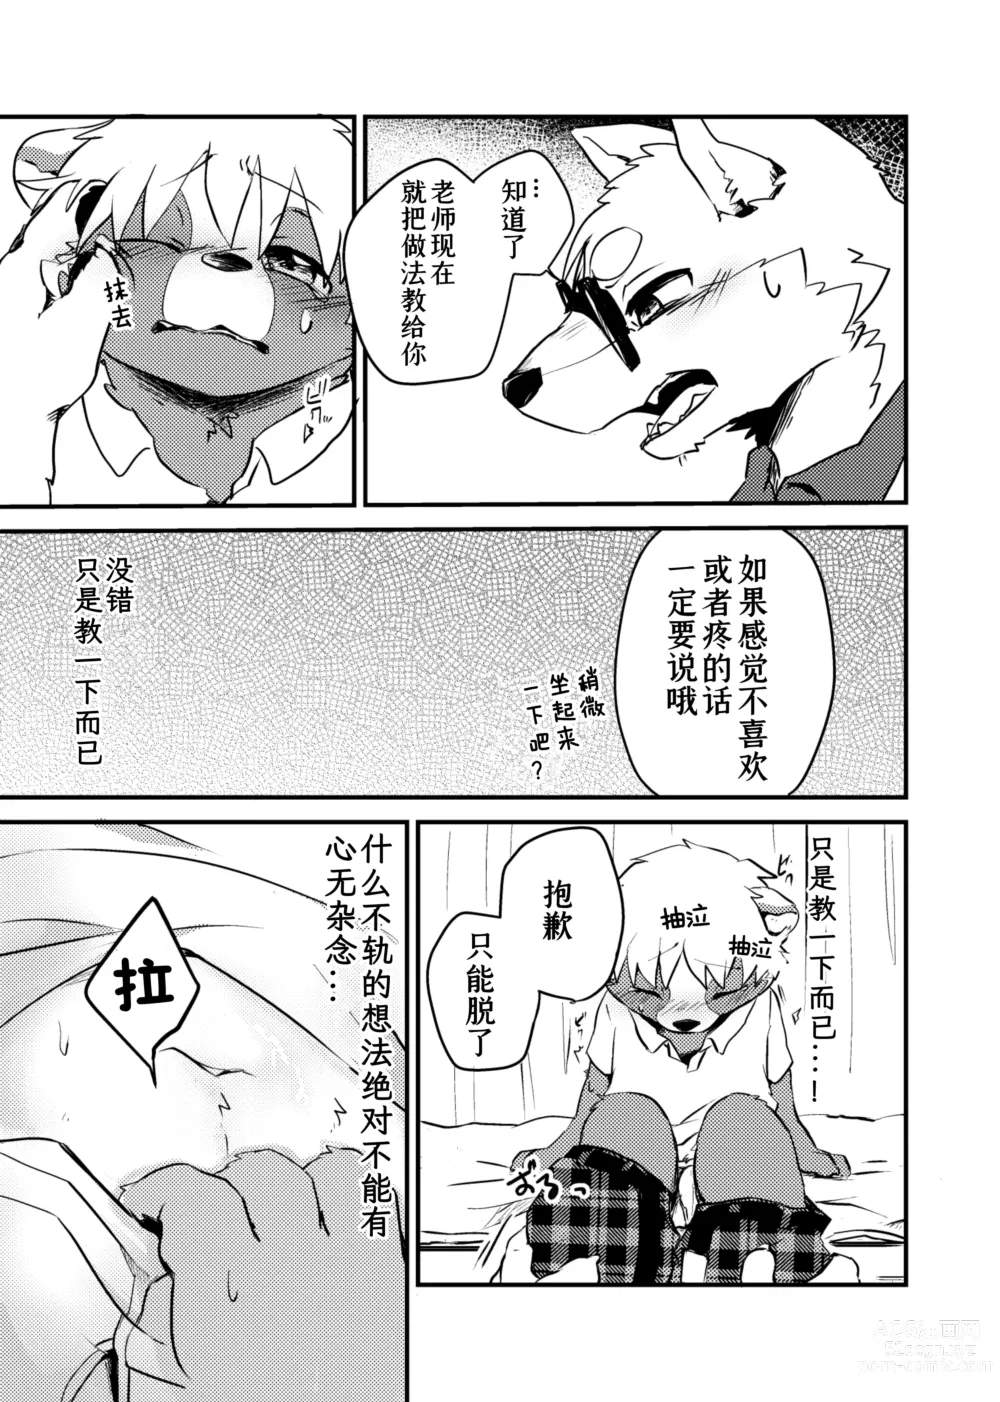 Page 19 of doujinshi 老师和我。流行性感冒务必要注意哦！？